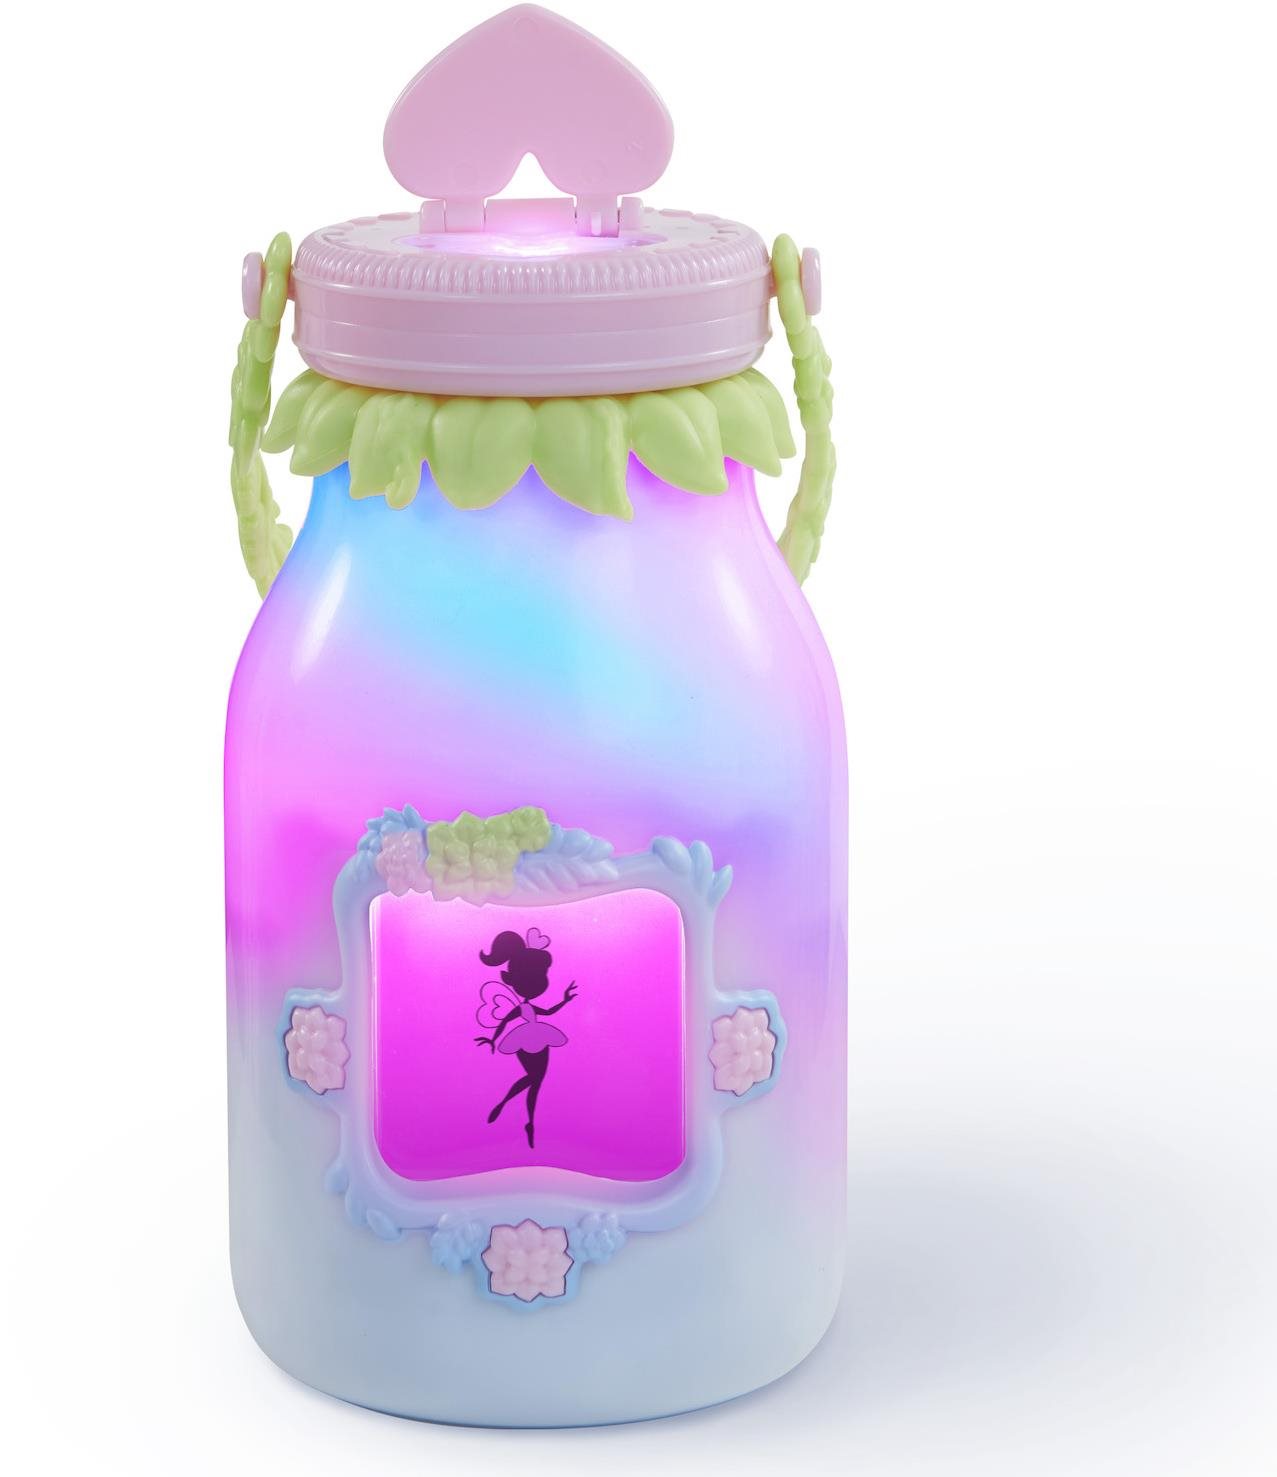 Interaktív játék Got2Glow Fairy Finder - Rózsaszín tündérfogó tégely